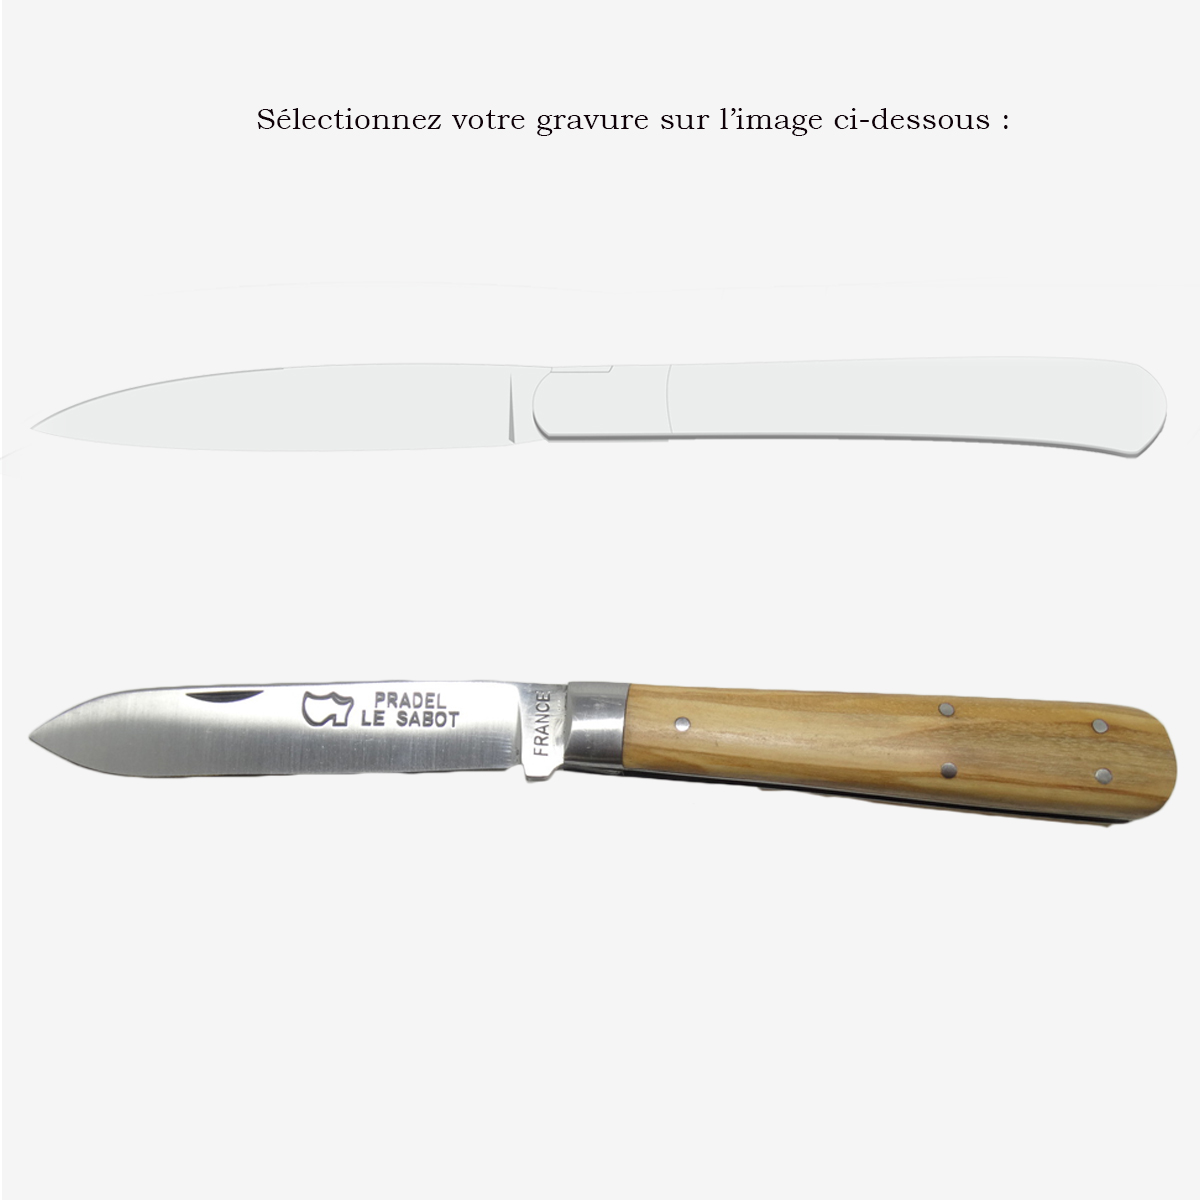 Pocket knife Le Pradel Olivewood